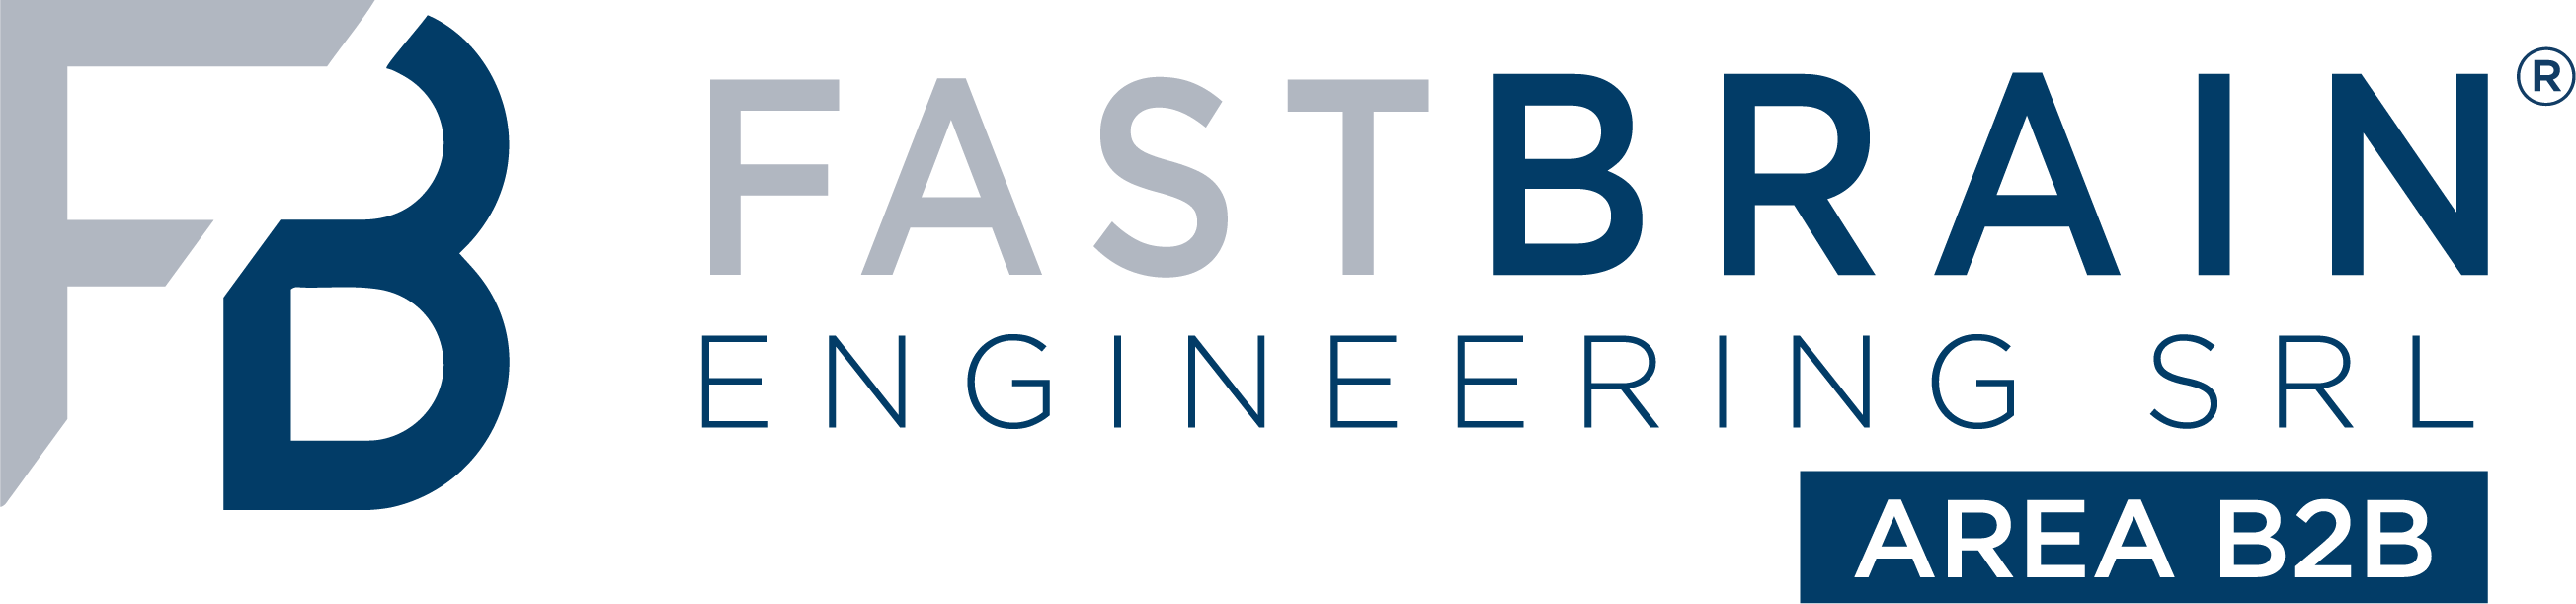 Area B2B Fastbrain Engineering Srl